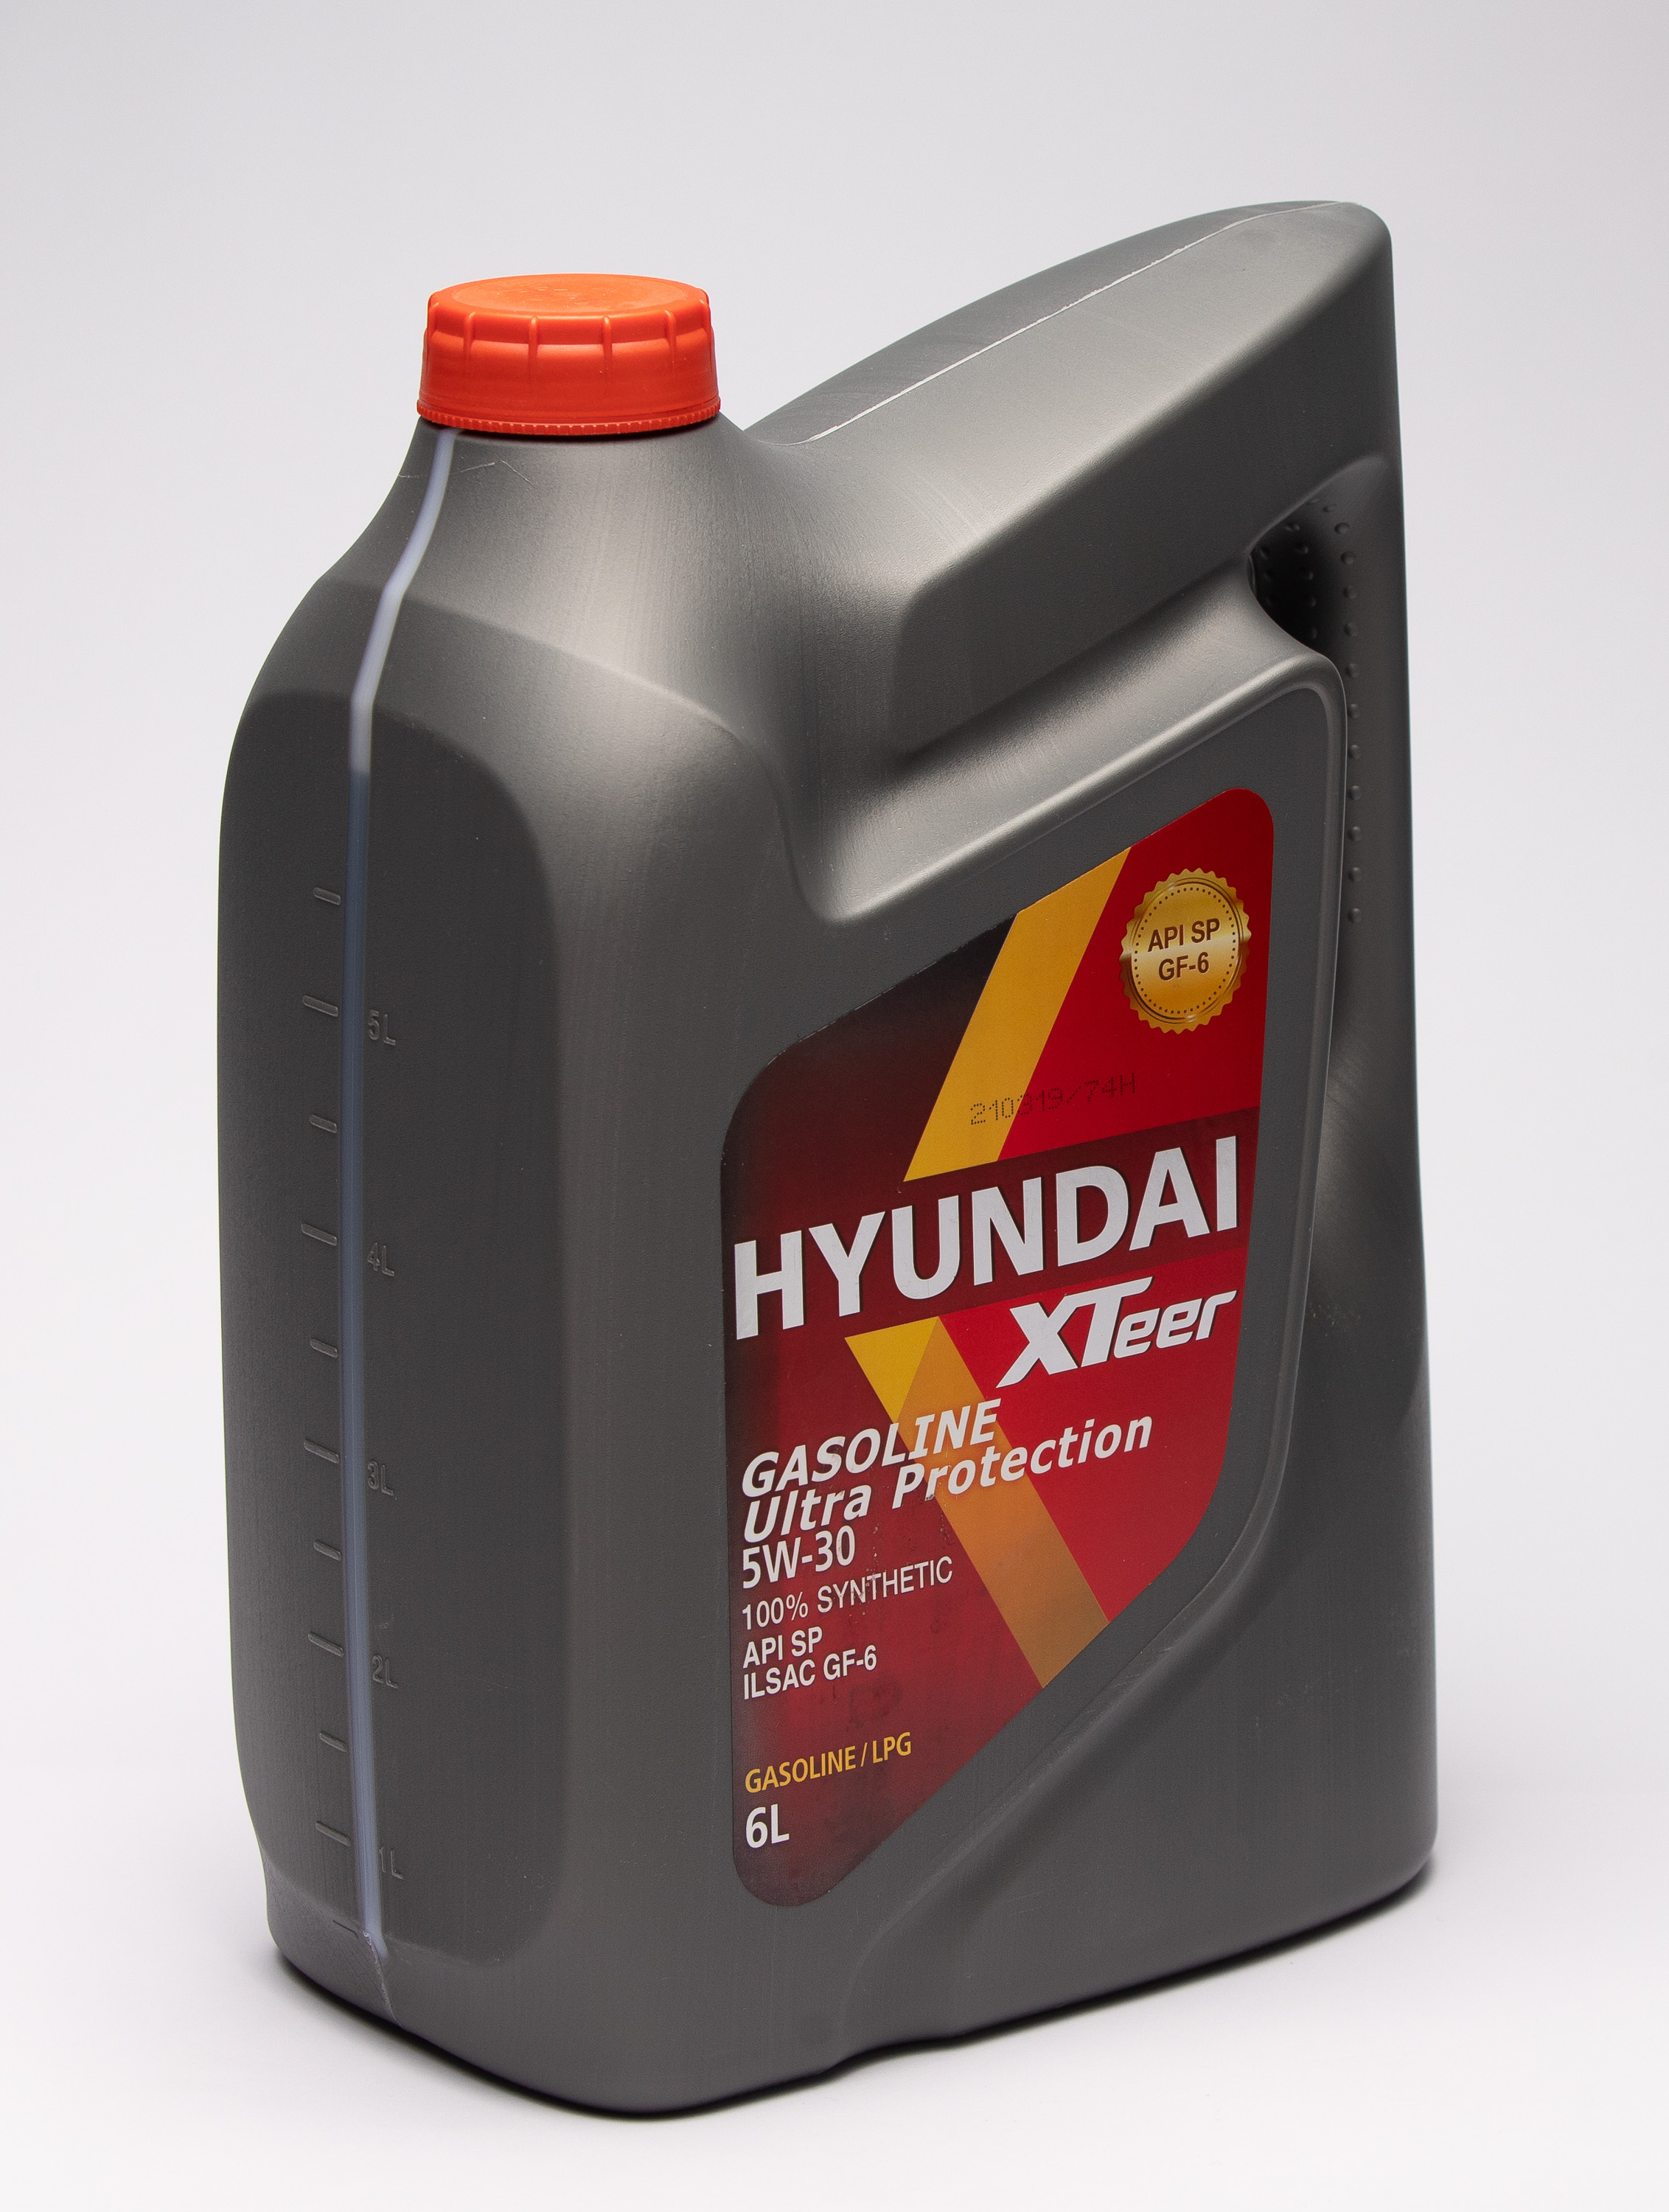 Hyundai xteer g700 5w 30. Hyundai XTEER gasoline g700 5w-30. Hyundai XTEER 5w30 4л. Hyundai масло XTEER g700. XTEER g700 5w30.